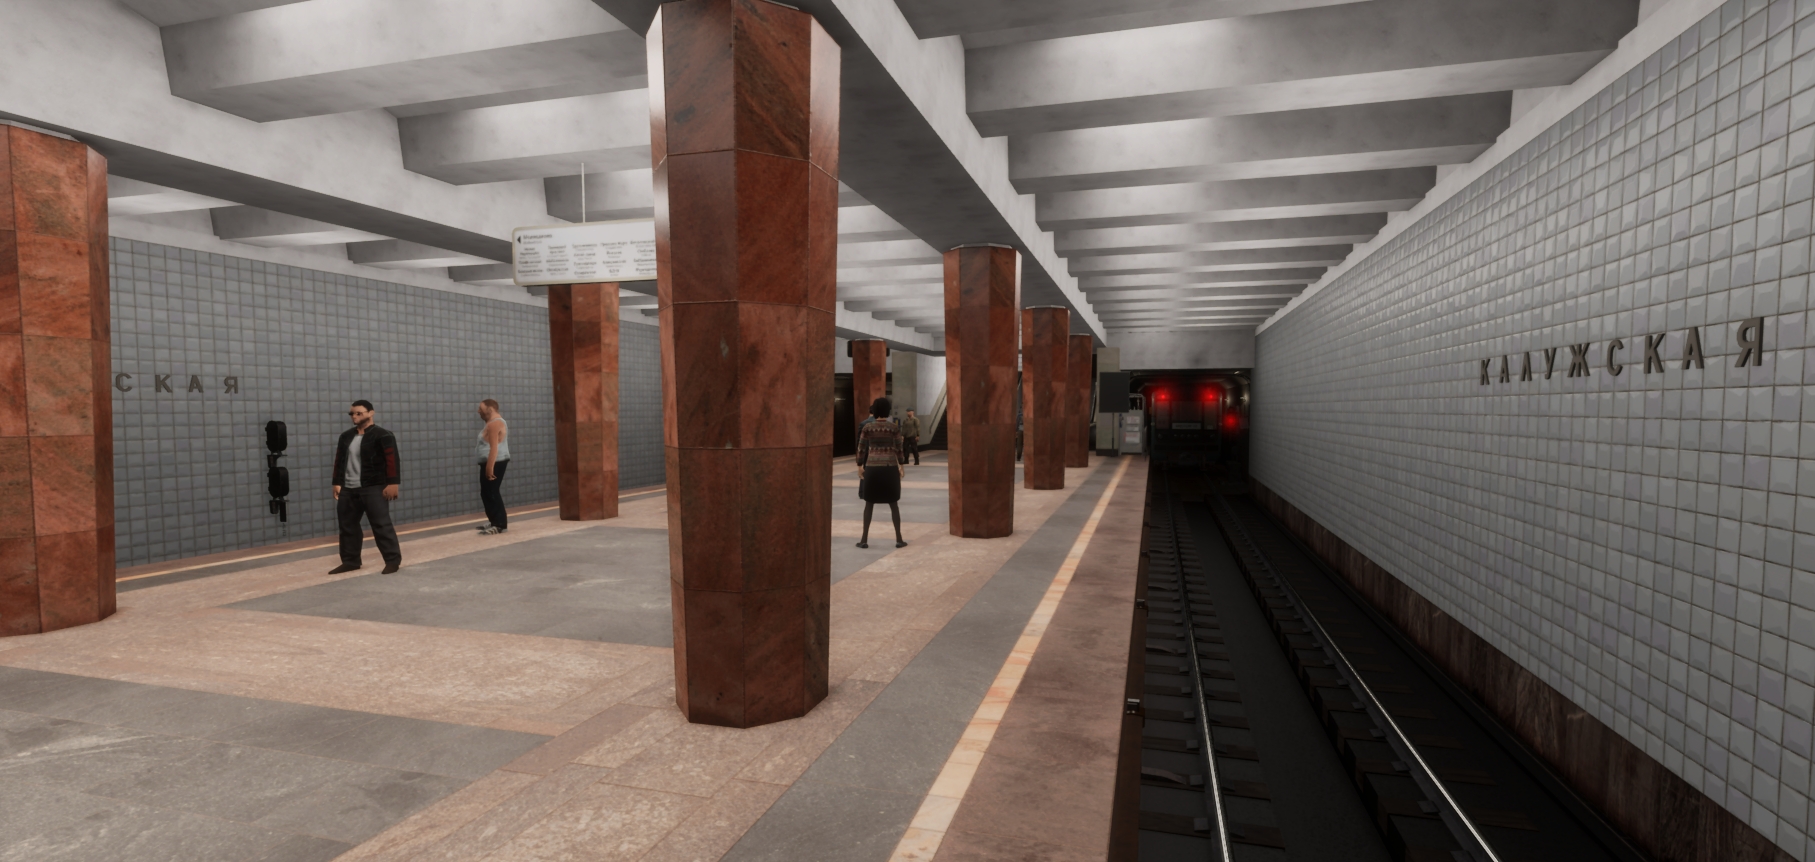 Игра московская метро 2. Metro Simulator 2. Метро симулятор 2022. Metro Simulator 2020. Metro Simulator 2 2022.